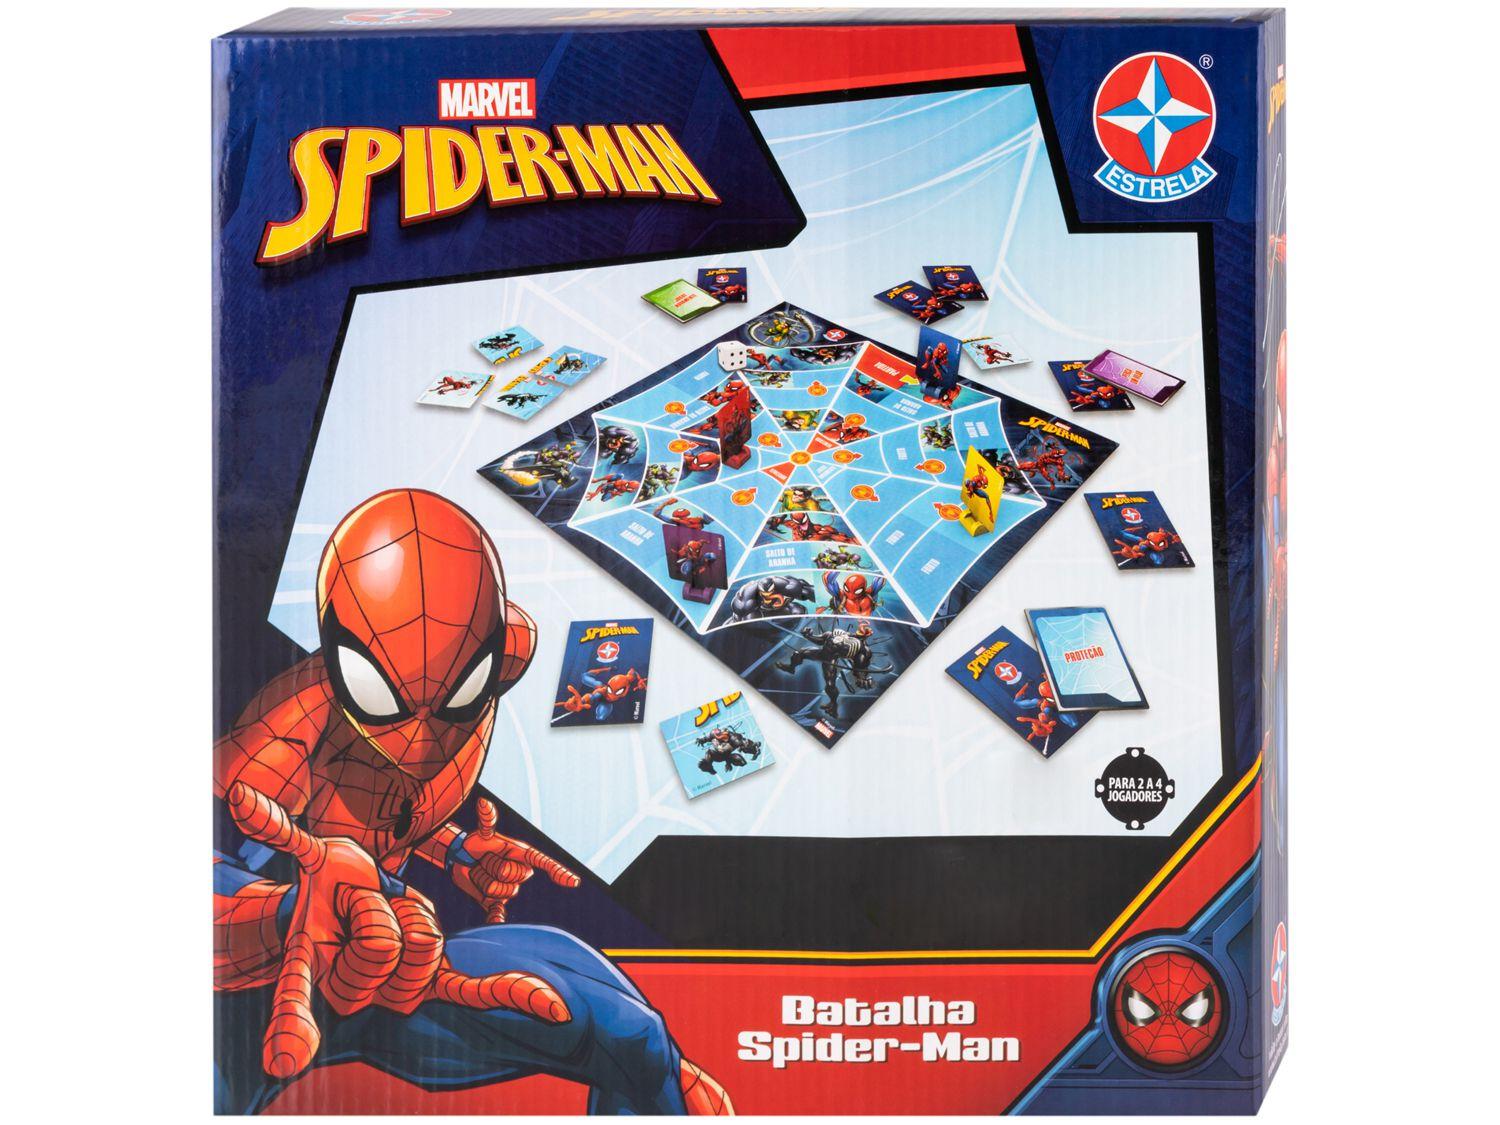 Cd De Jogos Golden Pack 1001 Jogos, Spiderman E Muito Mais